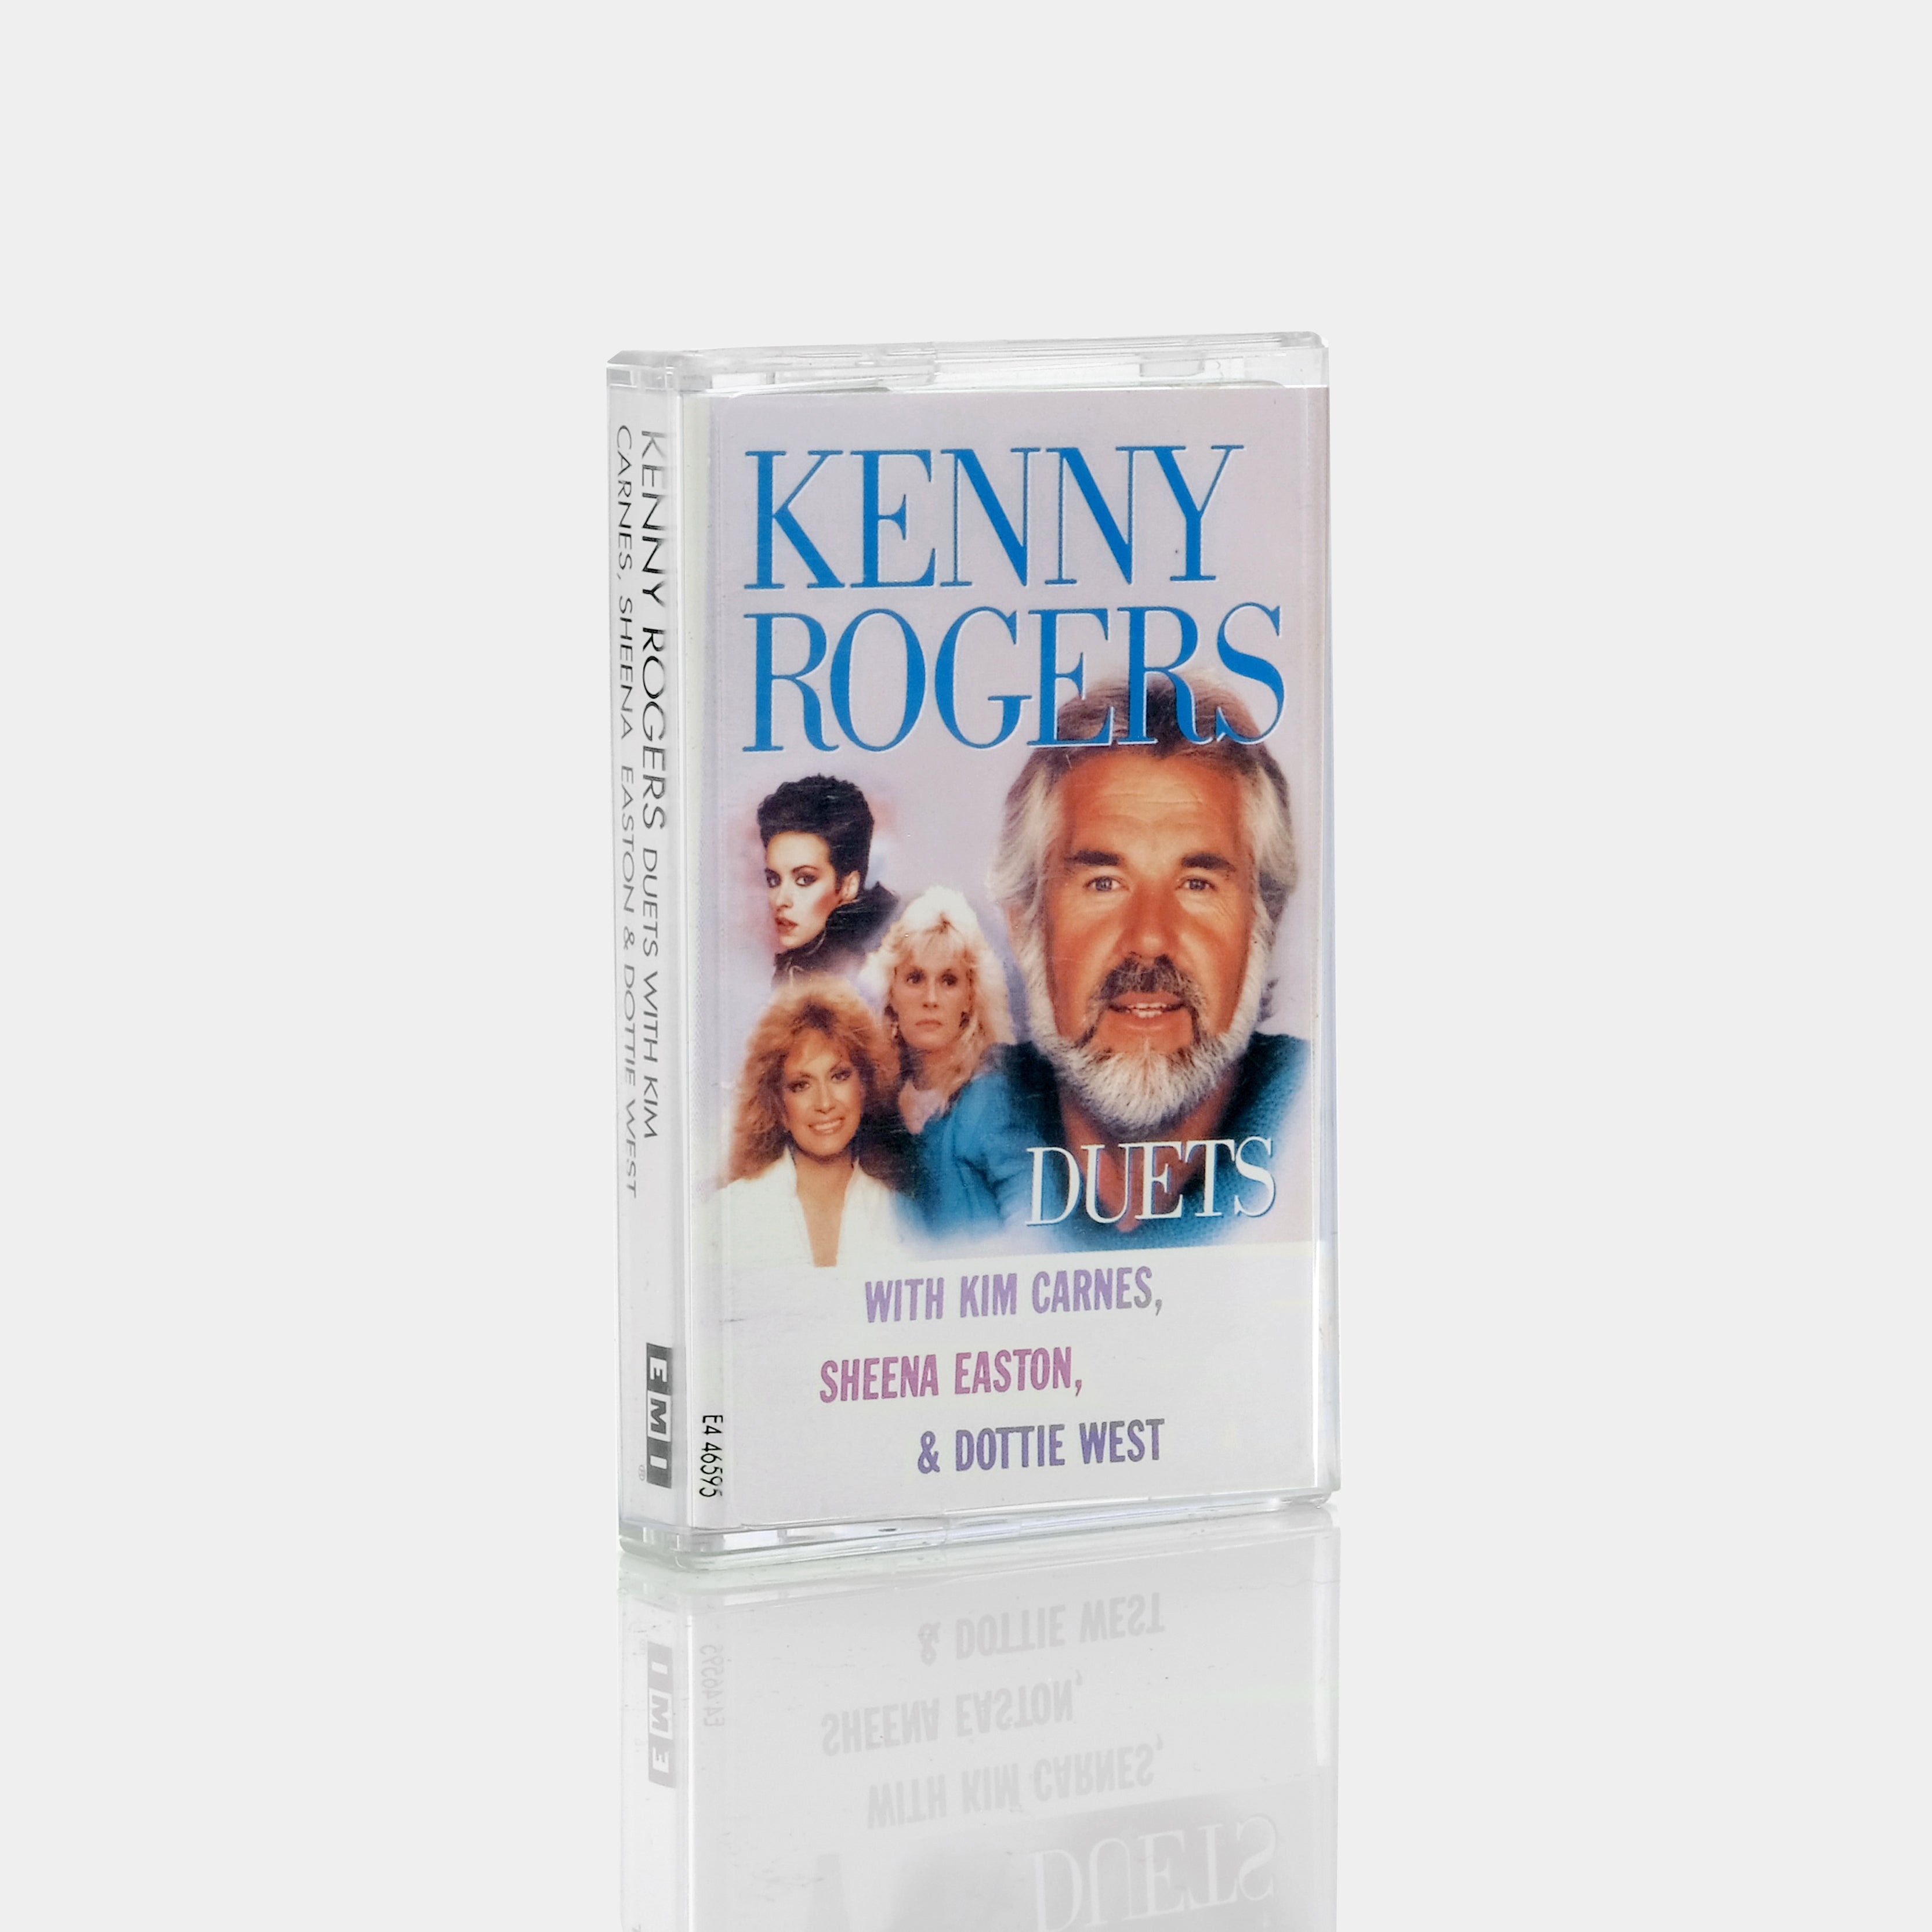 Kenny Rogers With Kim Carnes, Sheena Easton & Dottie West - Duets Cassette Tape